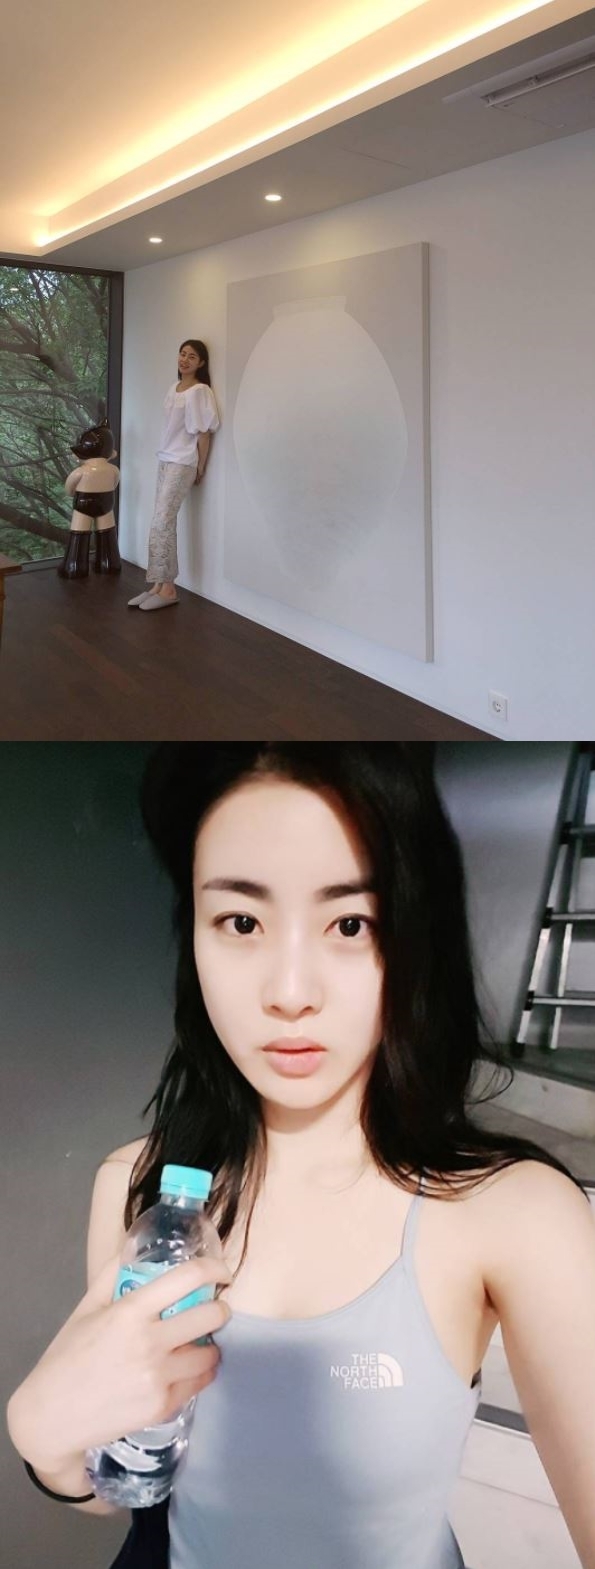 [스타일상] 현빈♡강소라, 달 항아리와 어울리 나요? /사진=강소라 SNS (2017년 개봉예정 영화 '자전차왕 엄복동' 김형식 역)